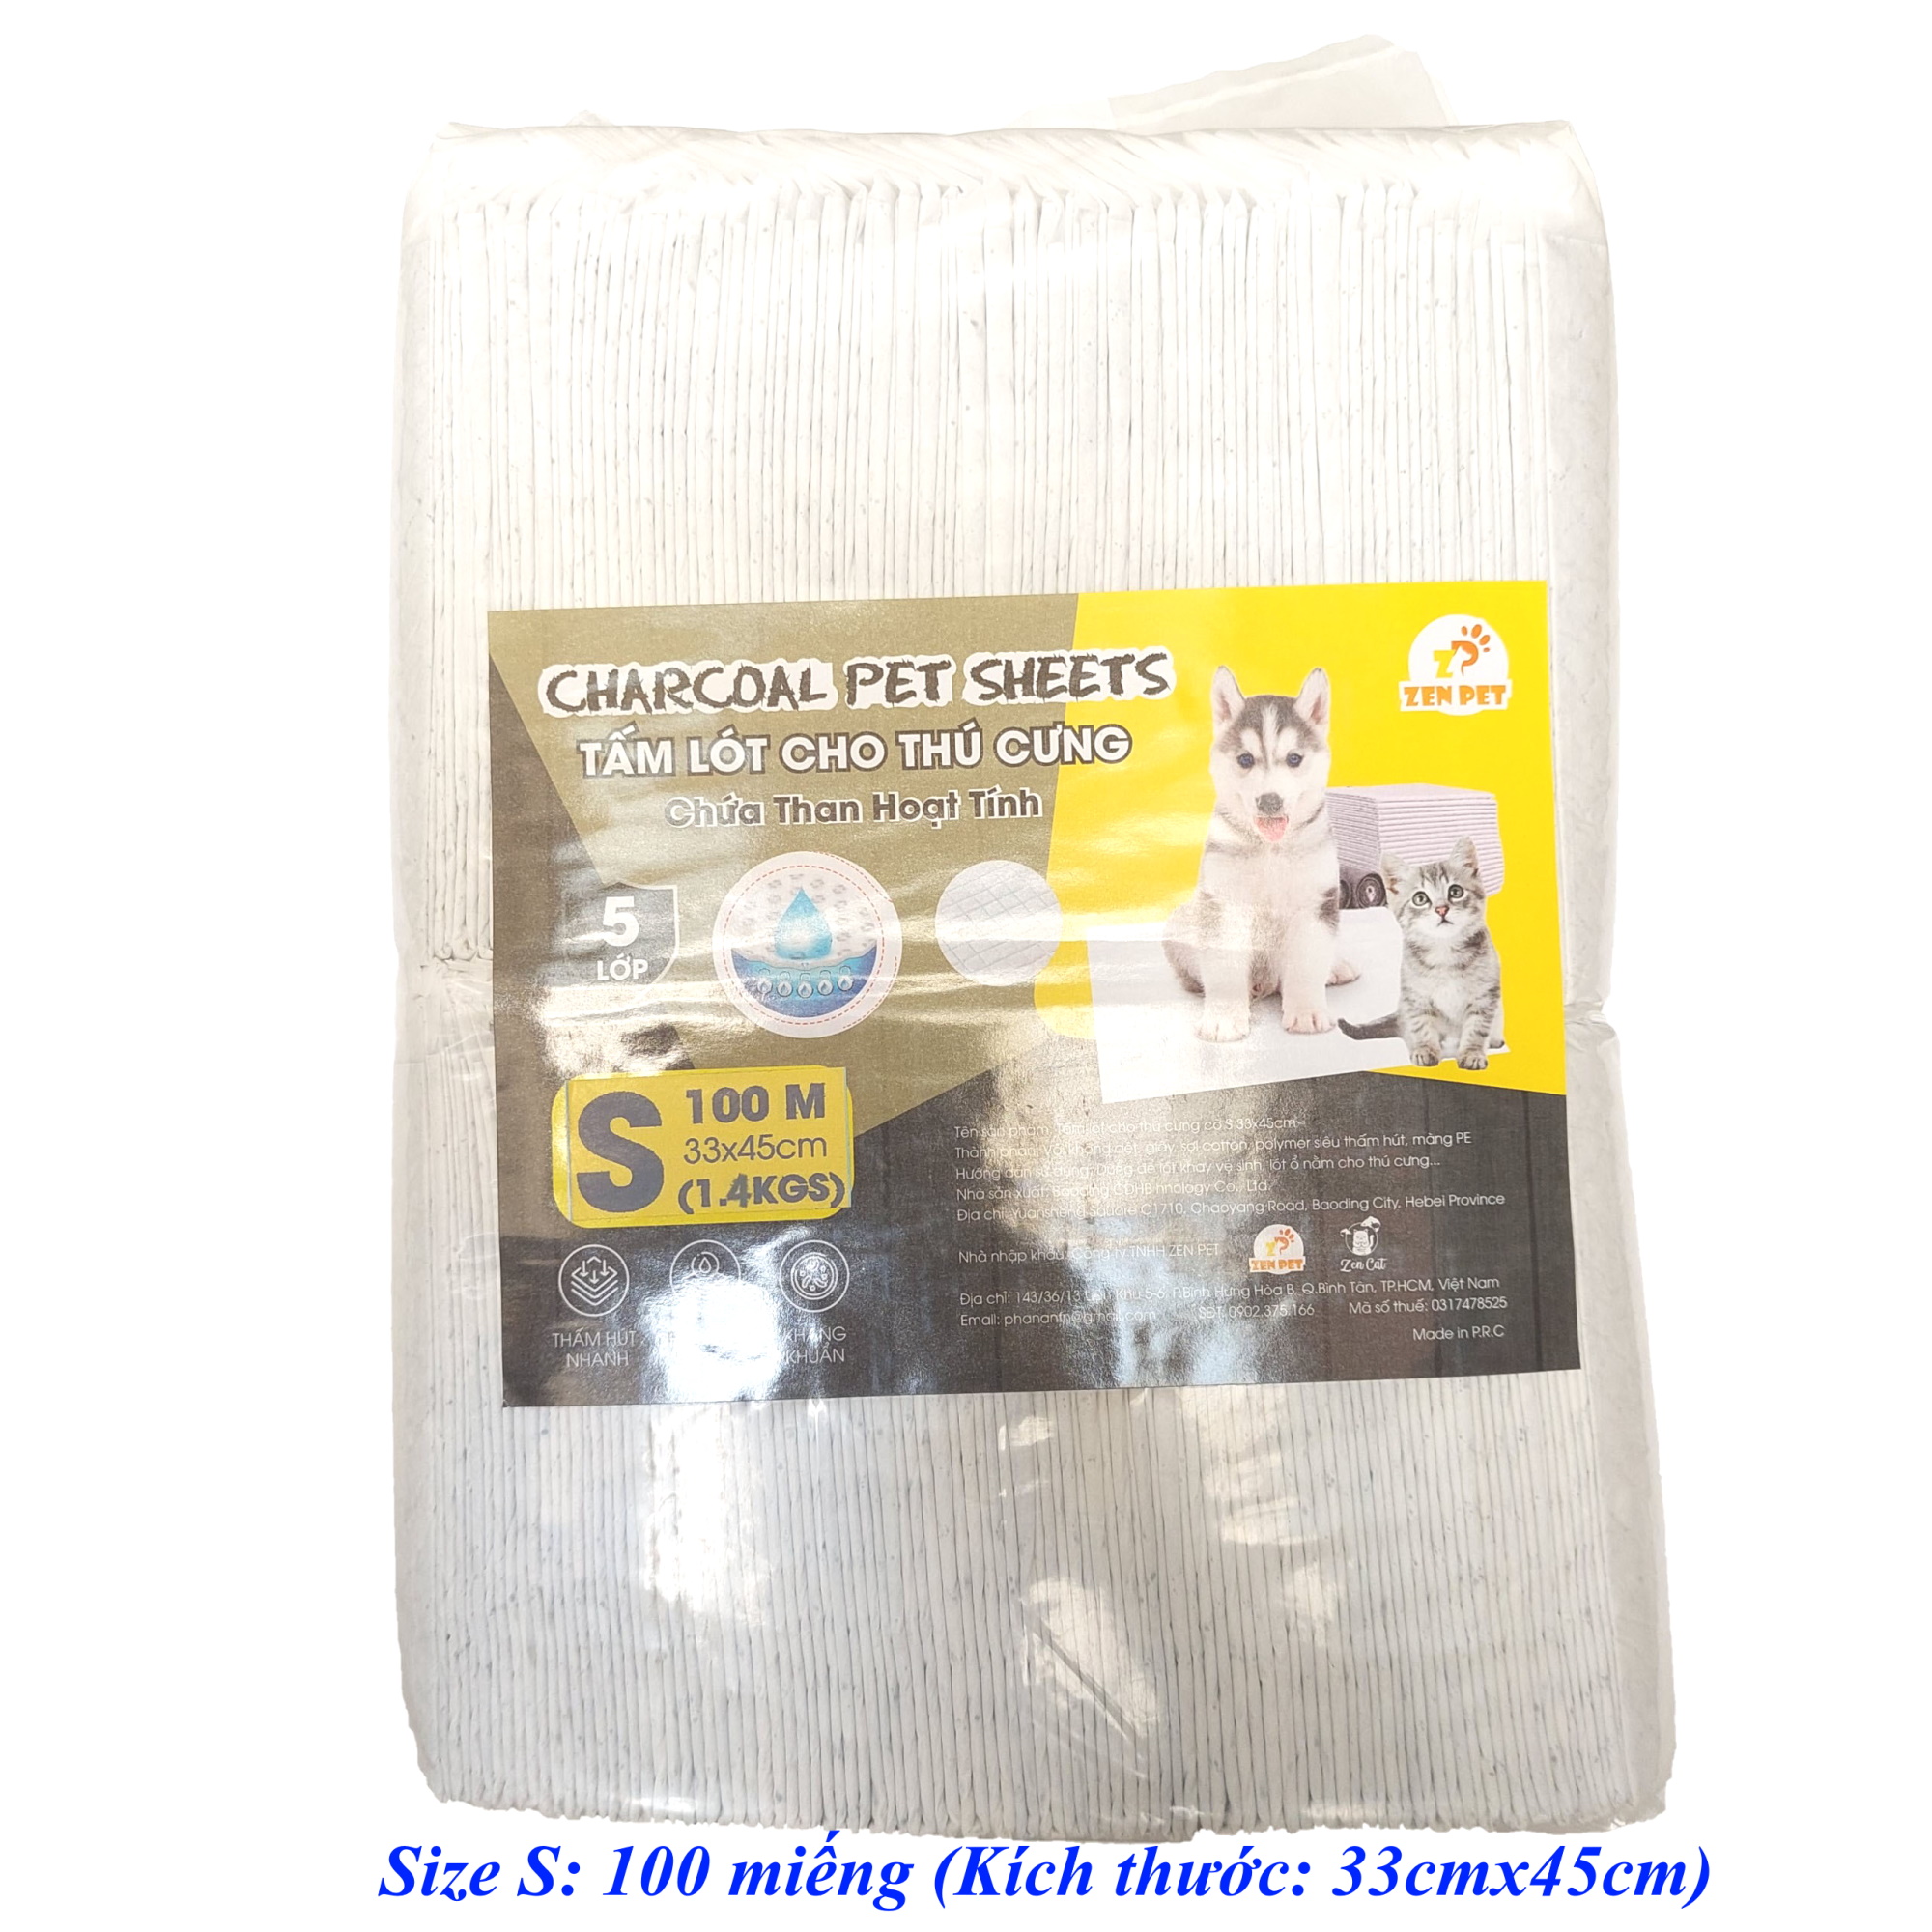 Tã lót chuồng cho Chó Mèo Chứa than hoạt tính Zen Pet Charcoal Pet Sheets 5 lớp Siêu thấm hút, khô thoáng, kháng khuẩn